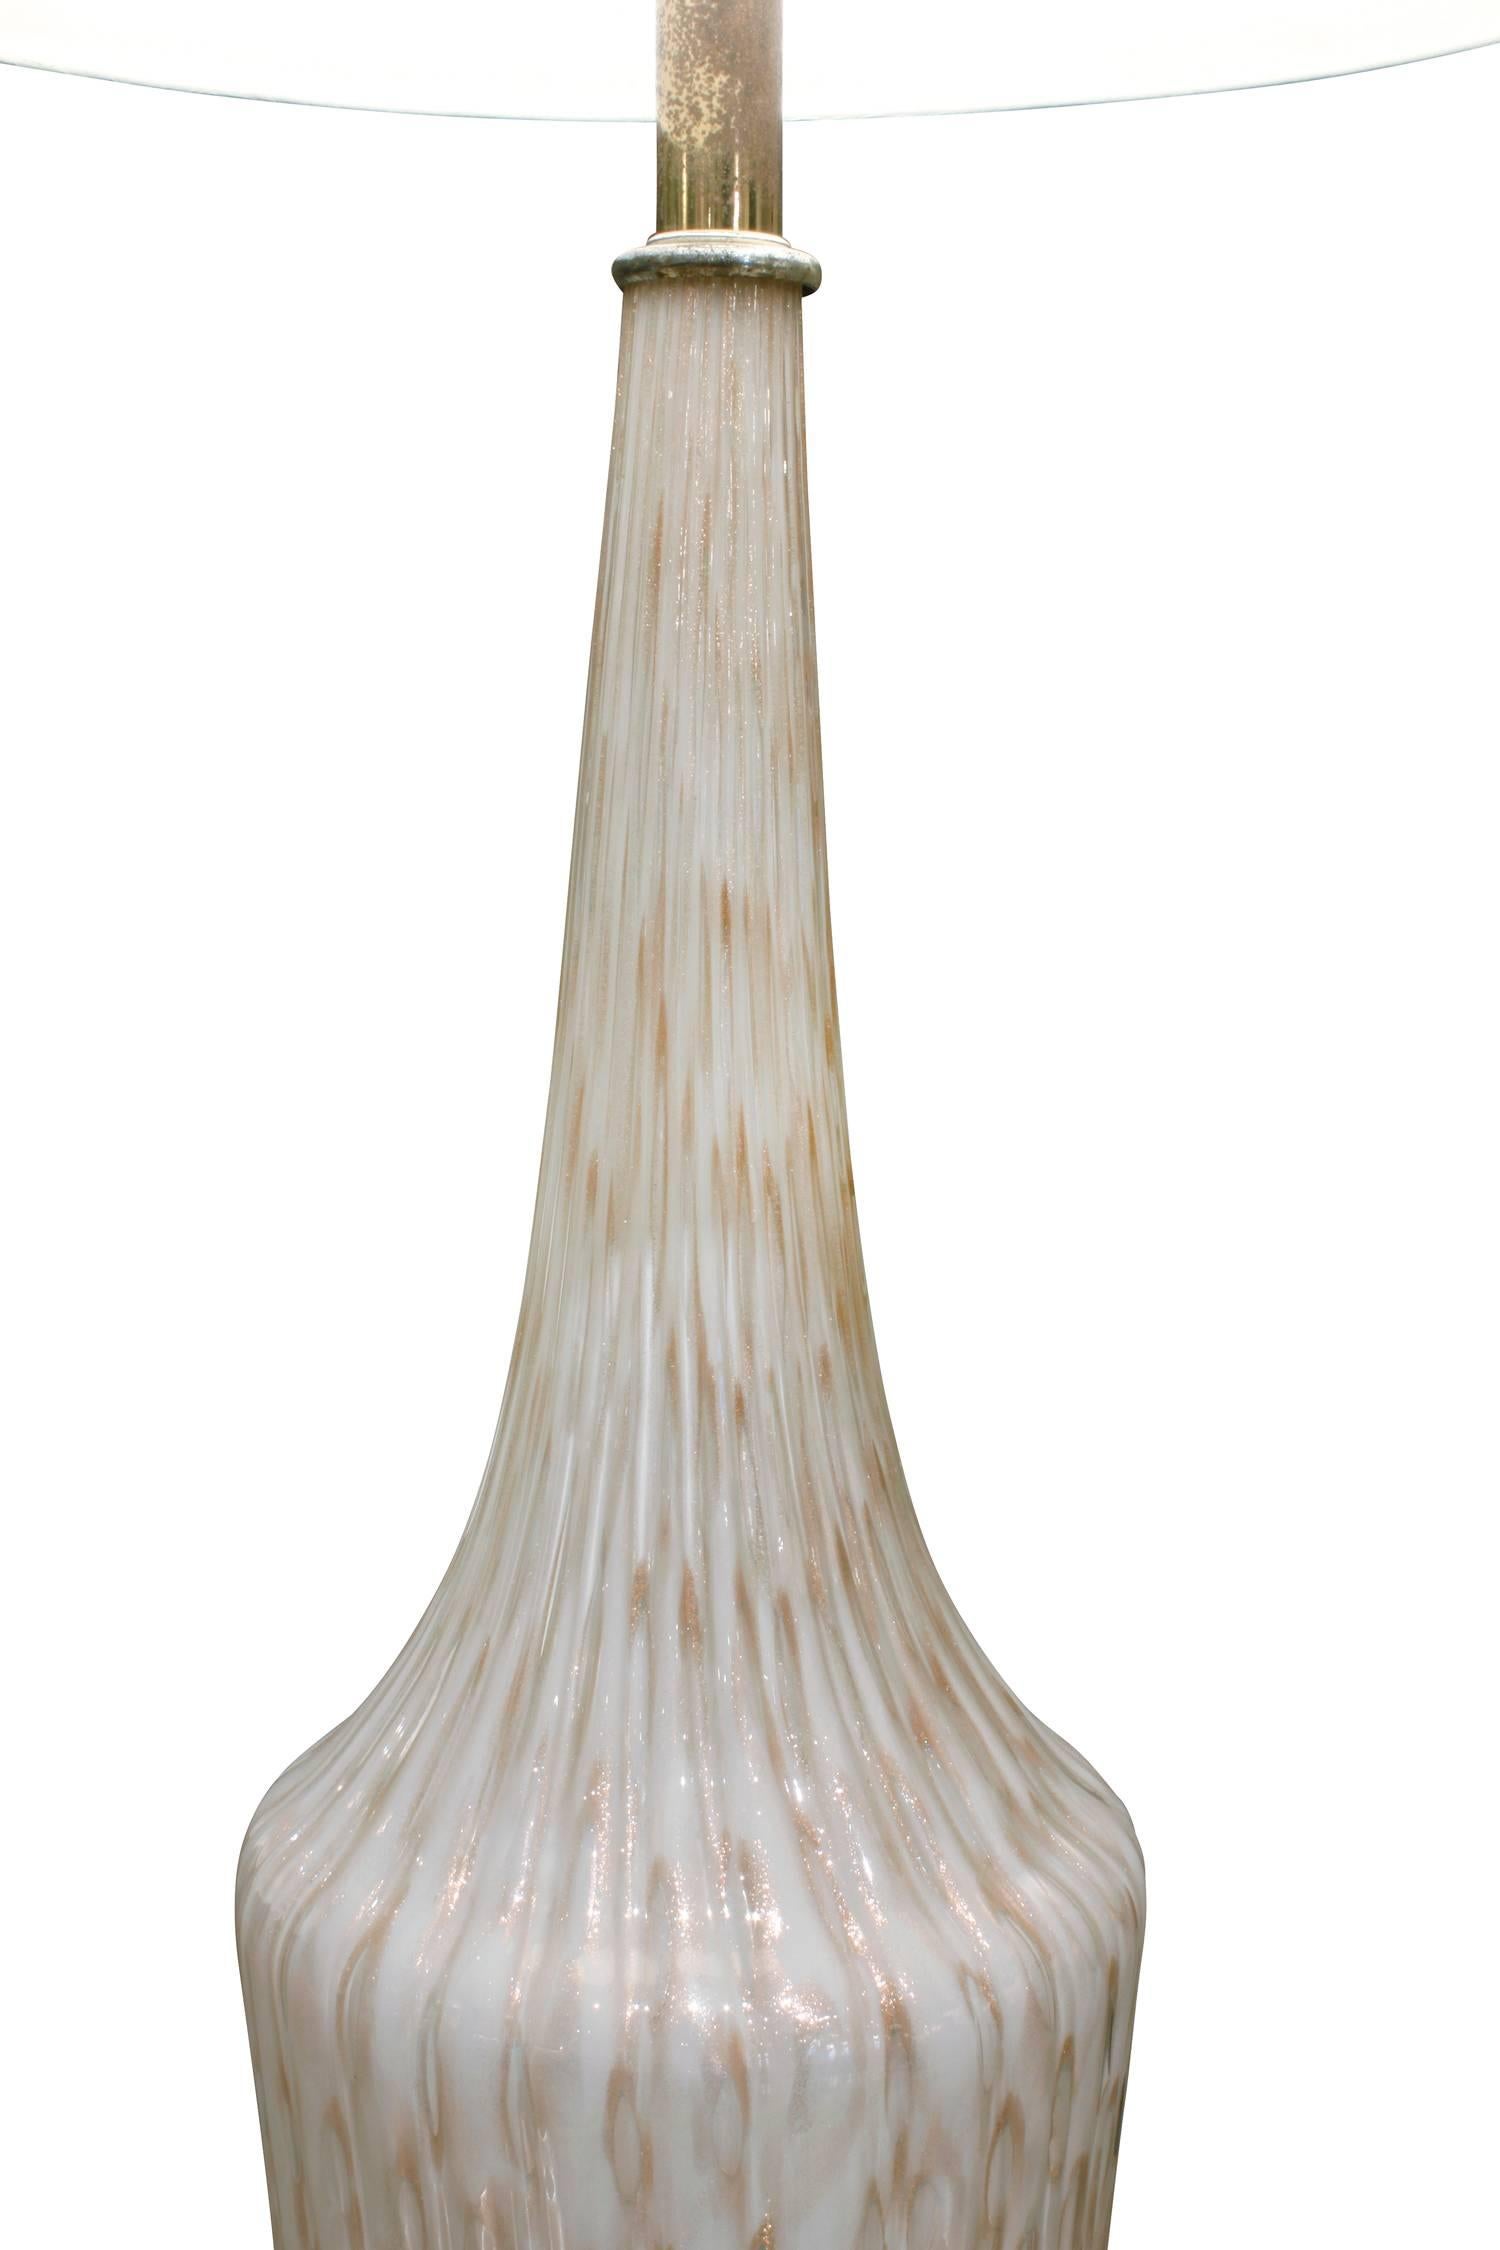 Monumentale Tischlampe aus mundgeblasenem Glas mit kontrollierten Blasen und Aventurin mit Messingband am Boden und Marmorsockel, zugeschrieben Fratelli Toso, Murano Italien, 1950er Jahre.

Maße: 7 Zoll an der Basis.